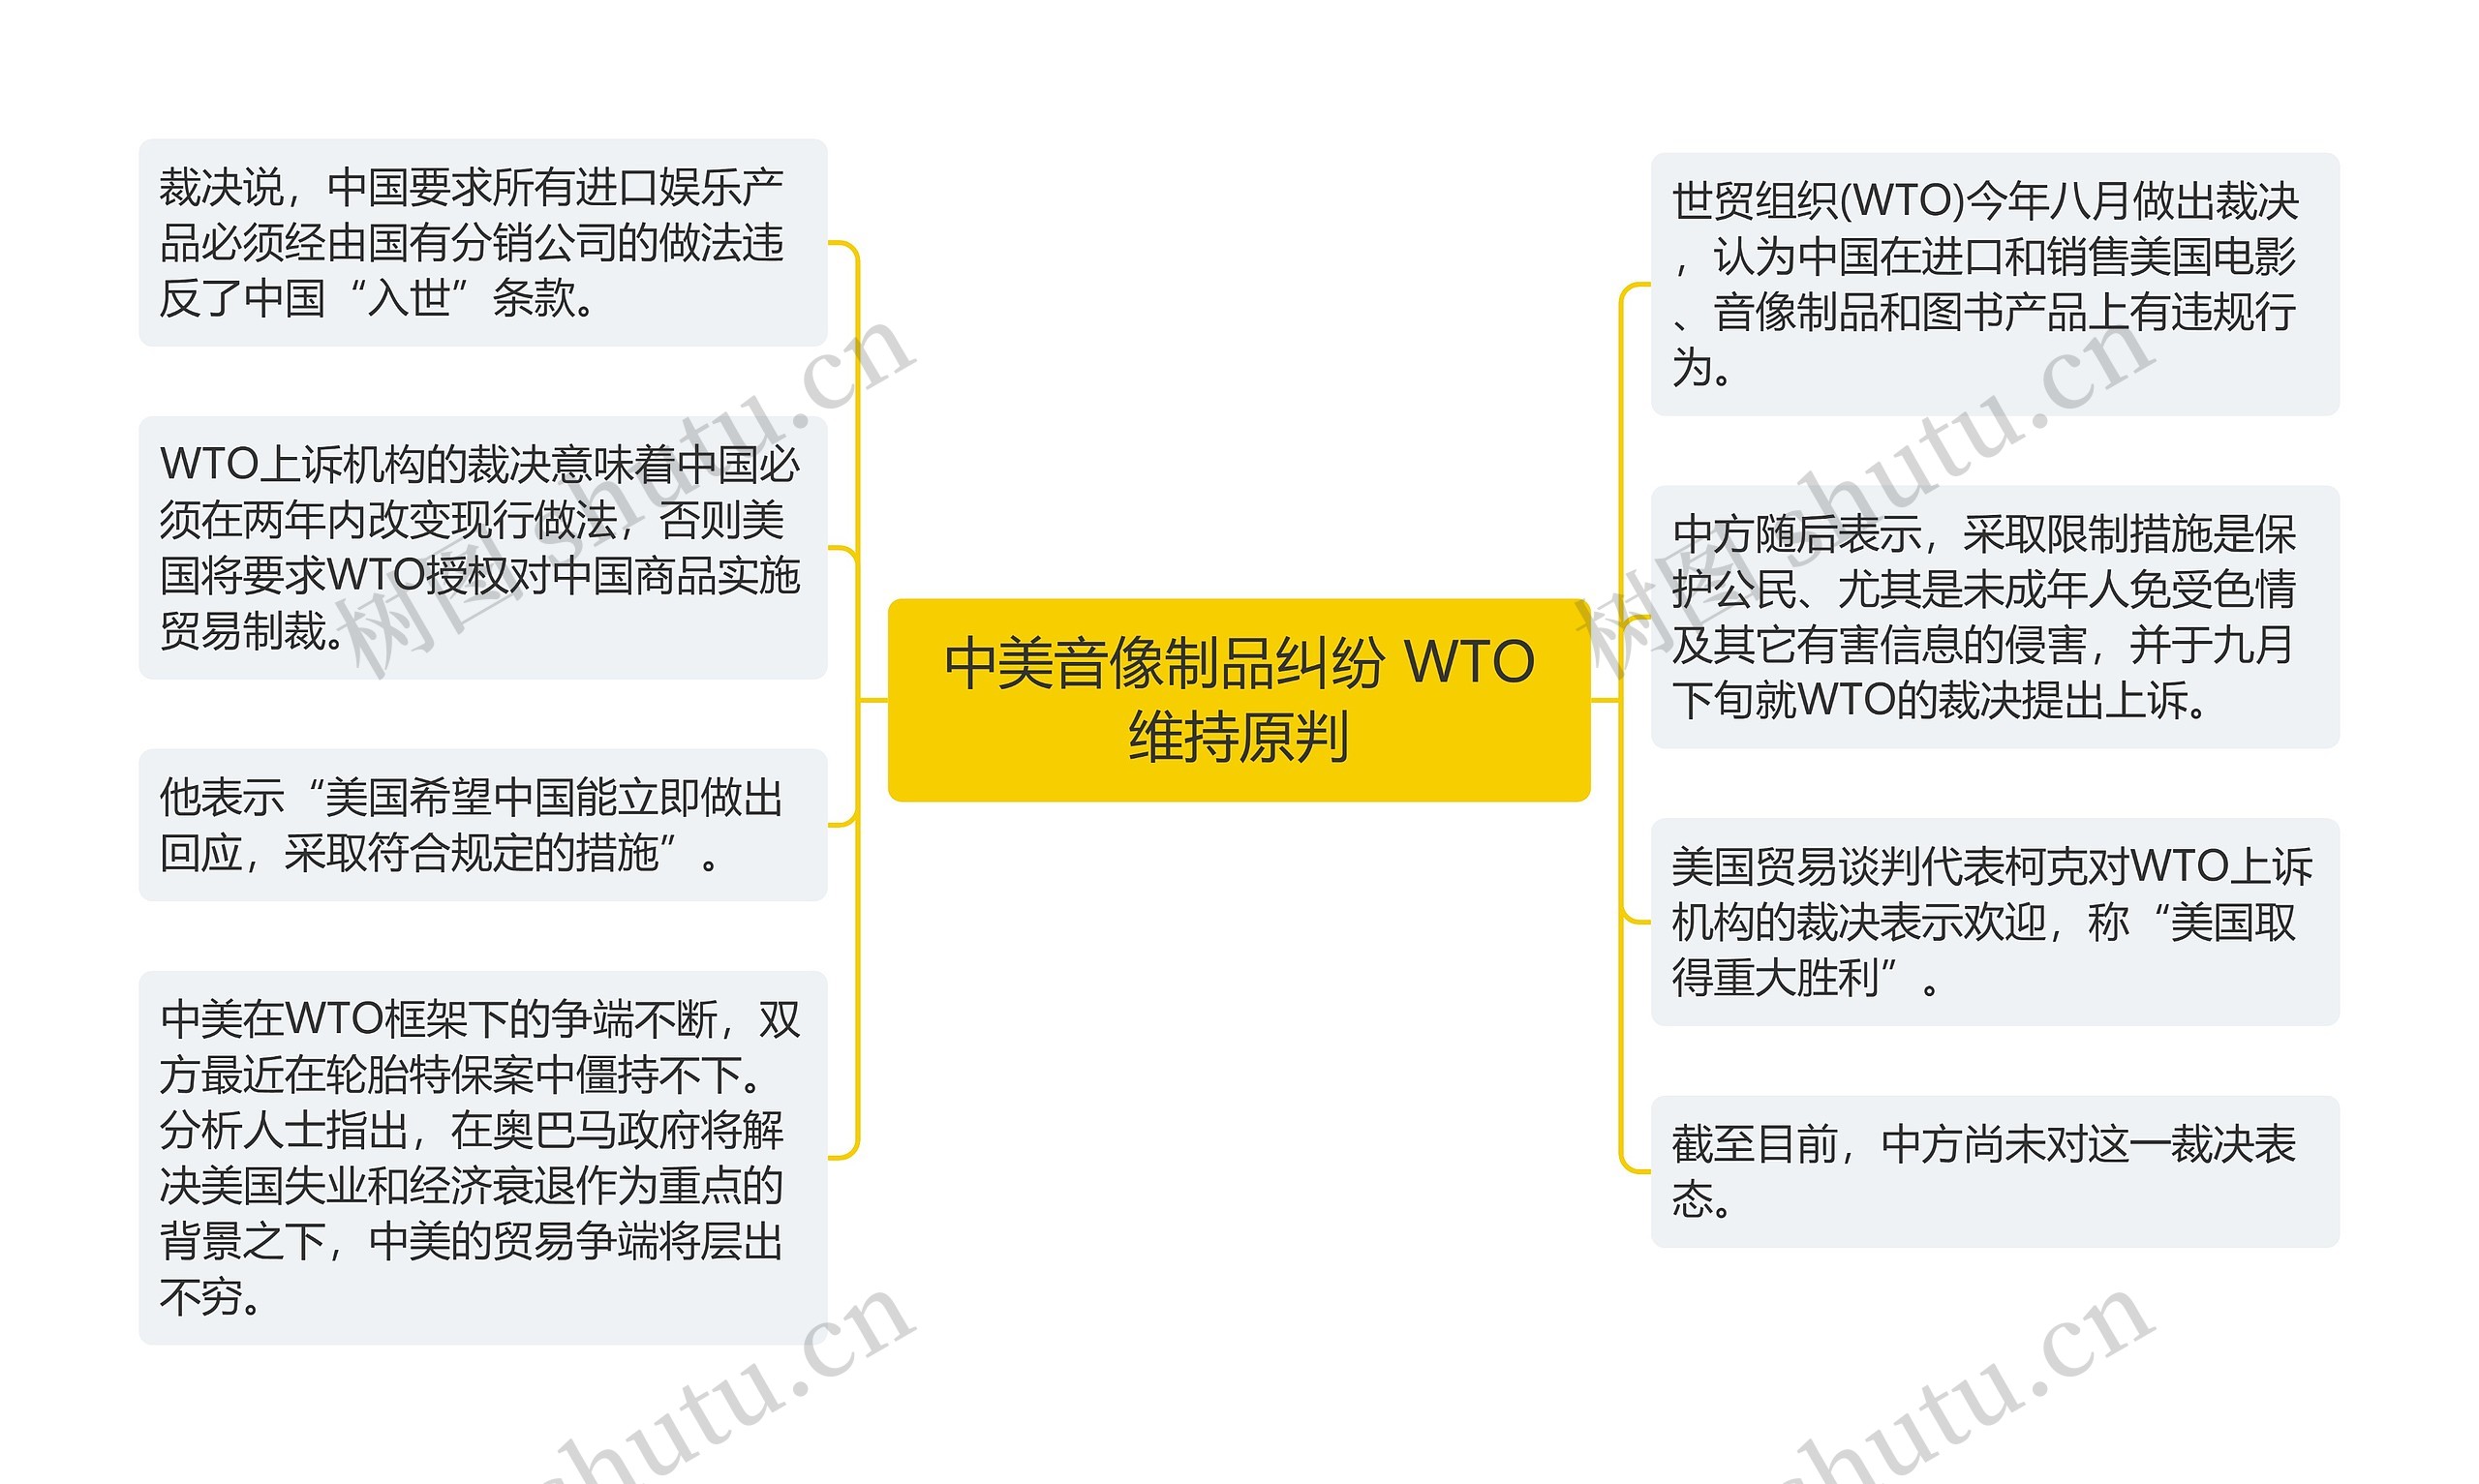 中美音像制品纠纷 WTO维持原判